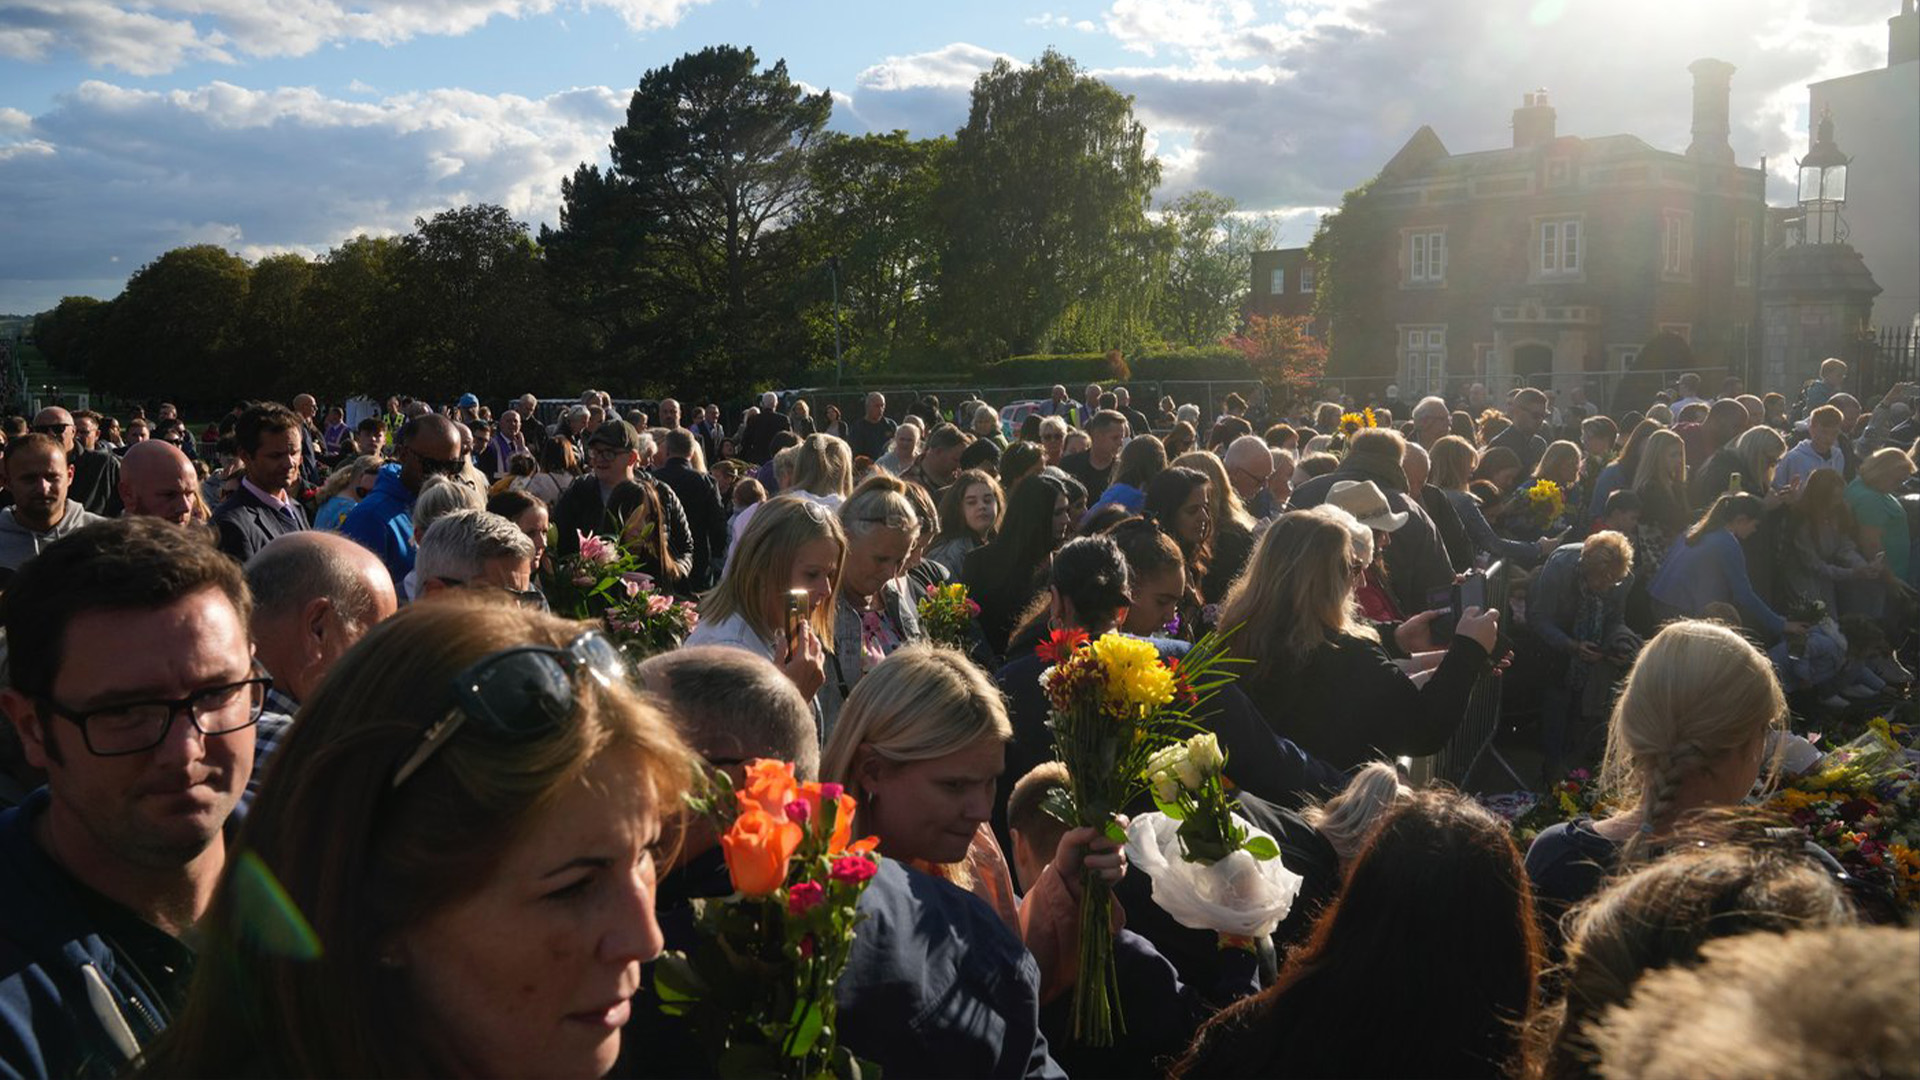 Les personnes en deuil font la queue pour déposer des fleurs à l'extérieur du château de Windsor à Windsor, en Angleterre, le vendredi 16 septembre 2022. La reine restera en état à Westminster Hall pendant quatre jours complets avant ses funérailles le lundi 19 septembre.